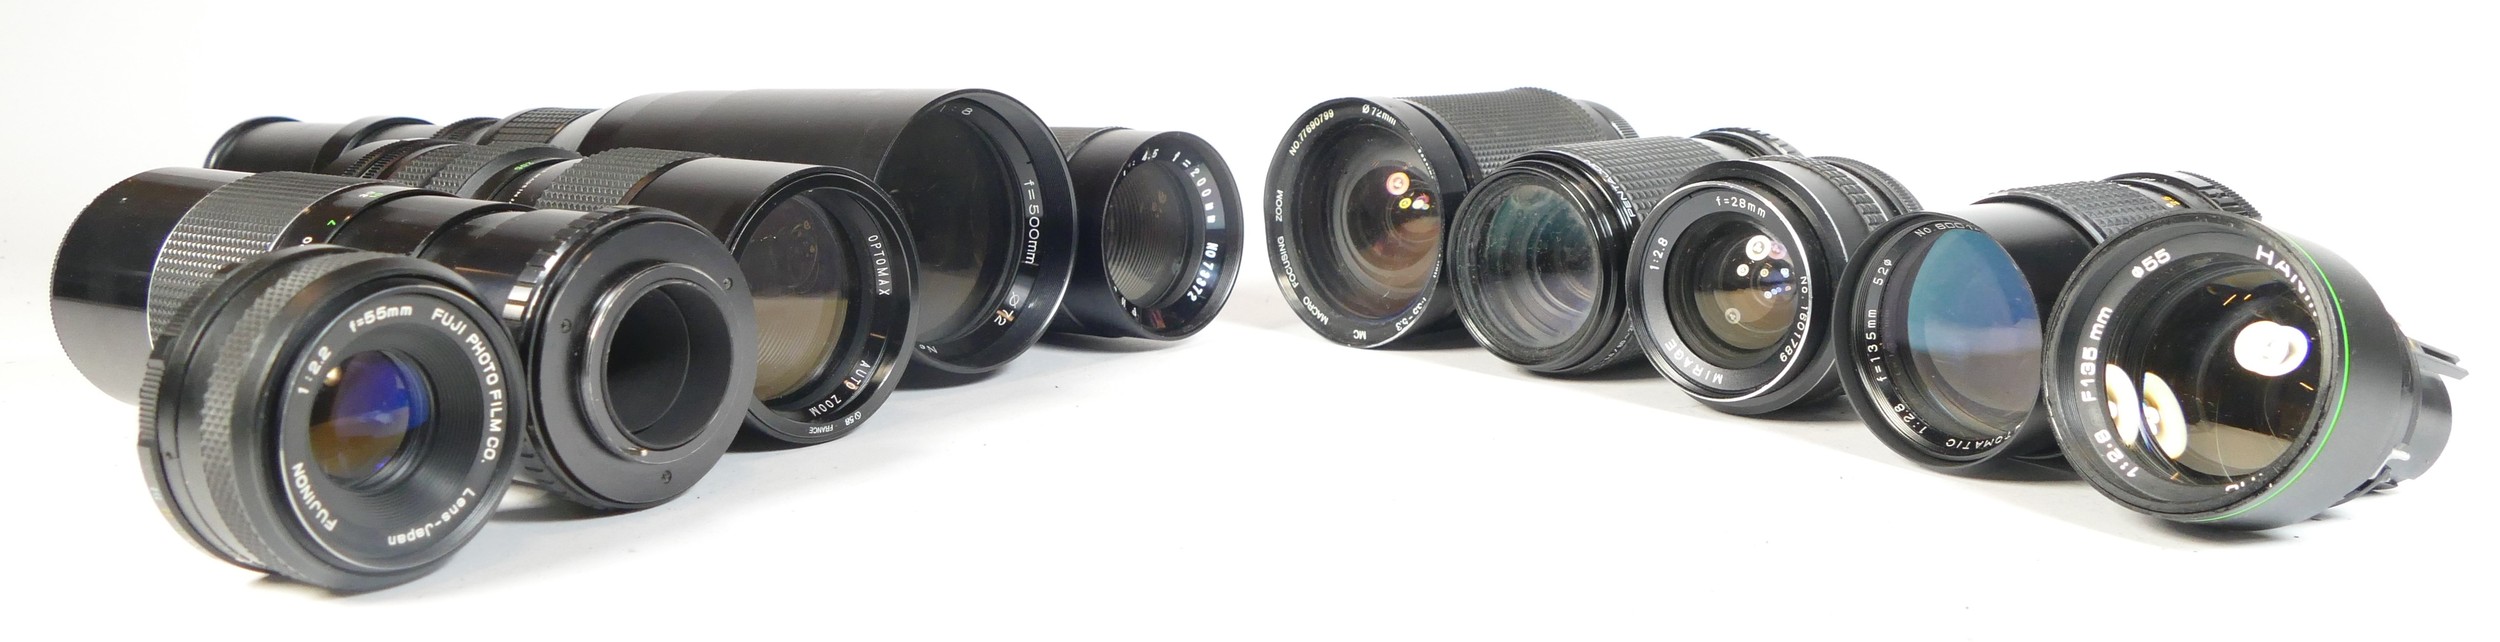 Twelve SLR vintage film cameras to include a Praktica B100, a Zenit E, a Fujica STX-1 and a - Image 3 of 3